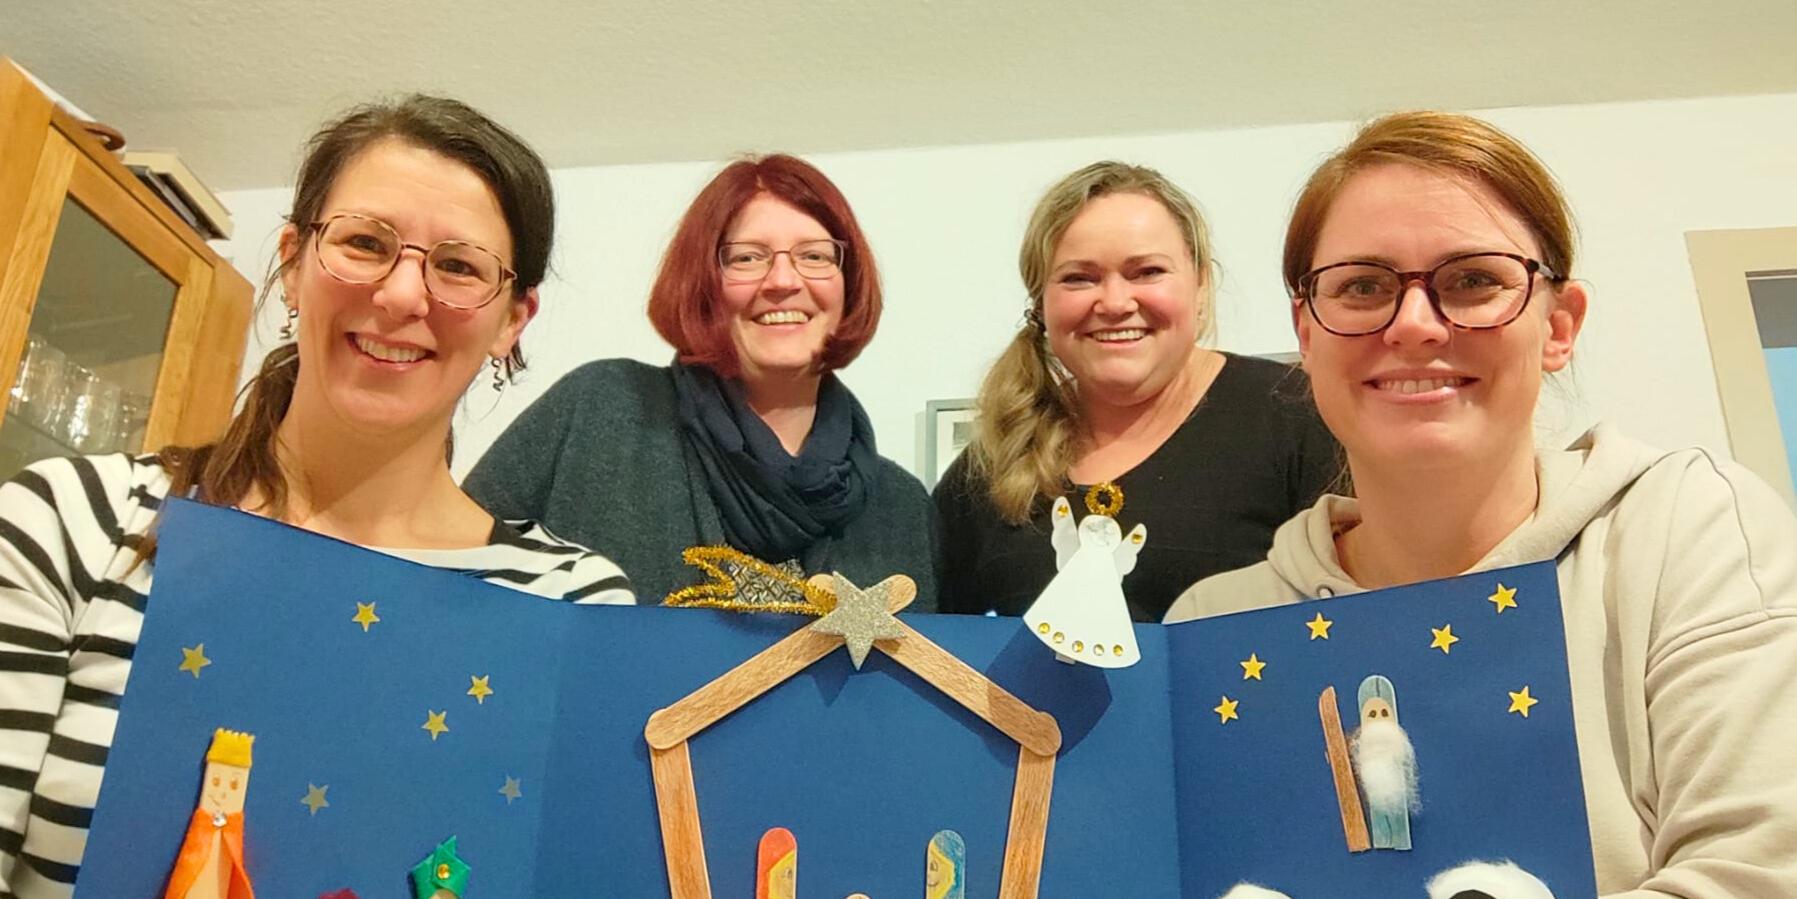 Stefanie Marhöfer, Manuela Kremer-Breuer, Elli Karnott und Anna van den Boom haben gemeinsam 120 Weihnachtstüten für Familien gestaltet und gepackt.